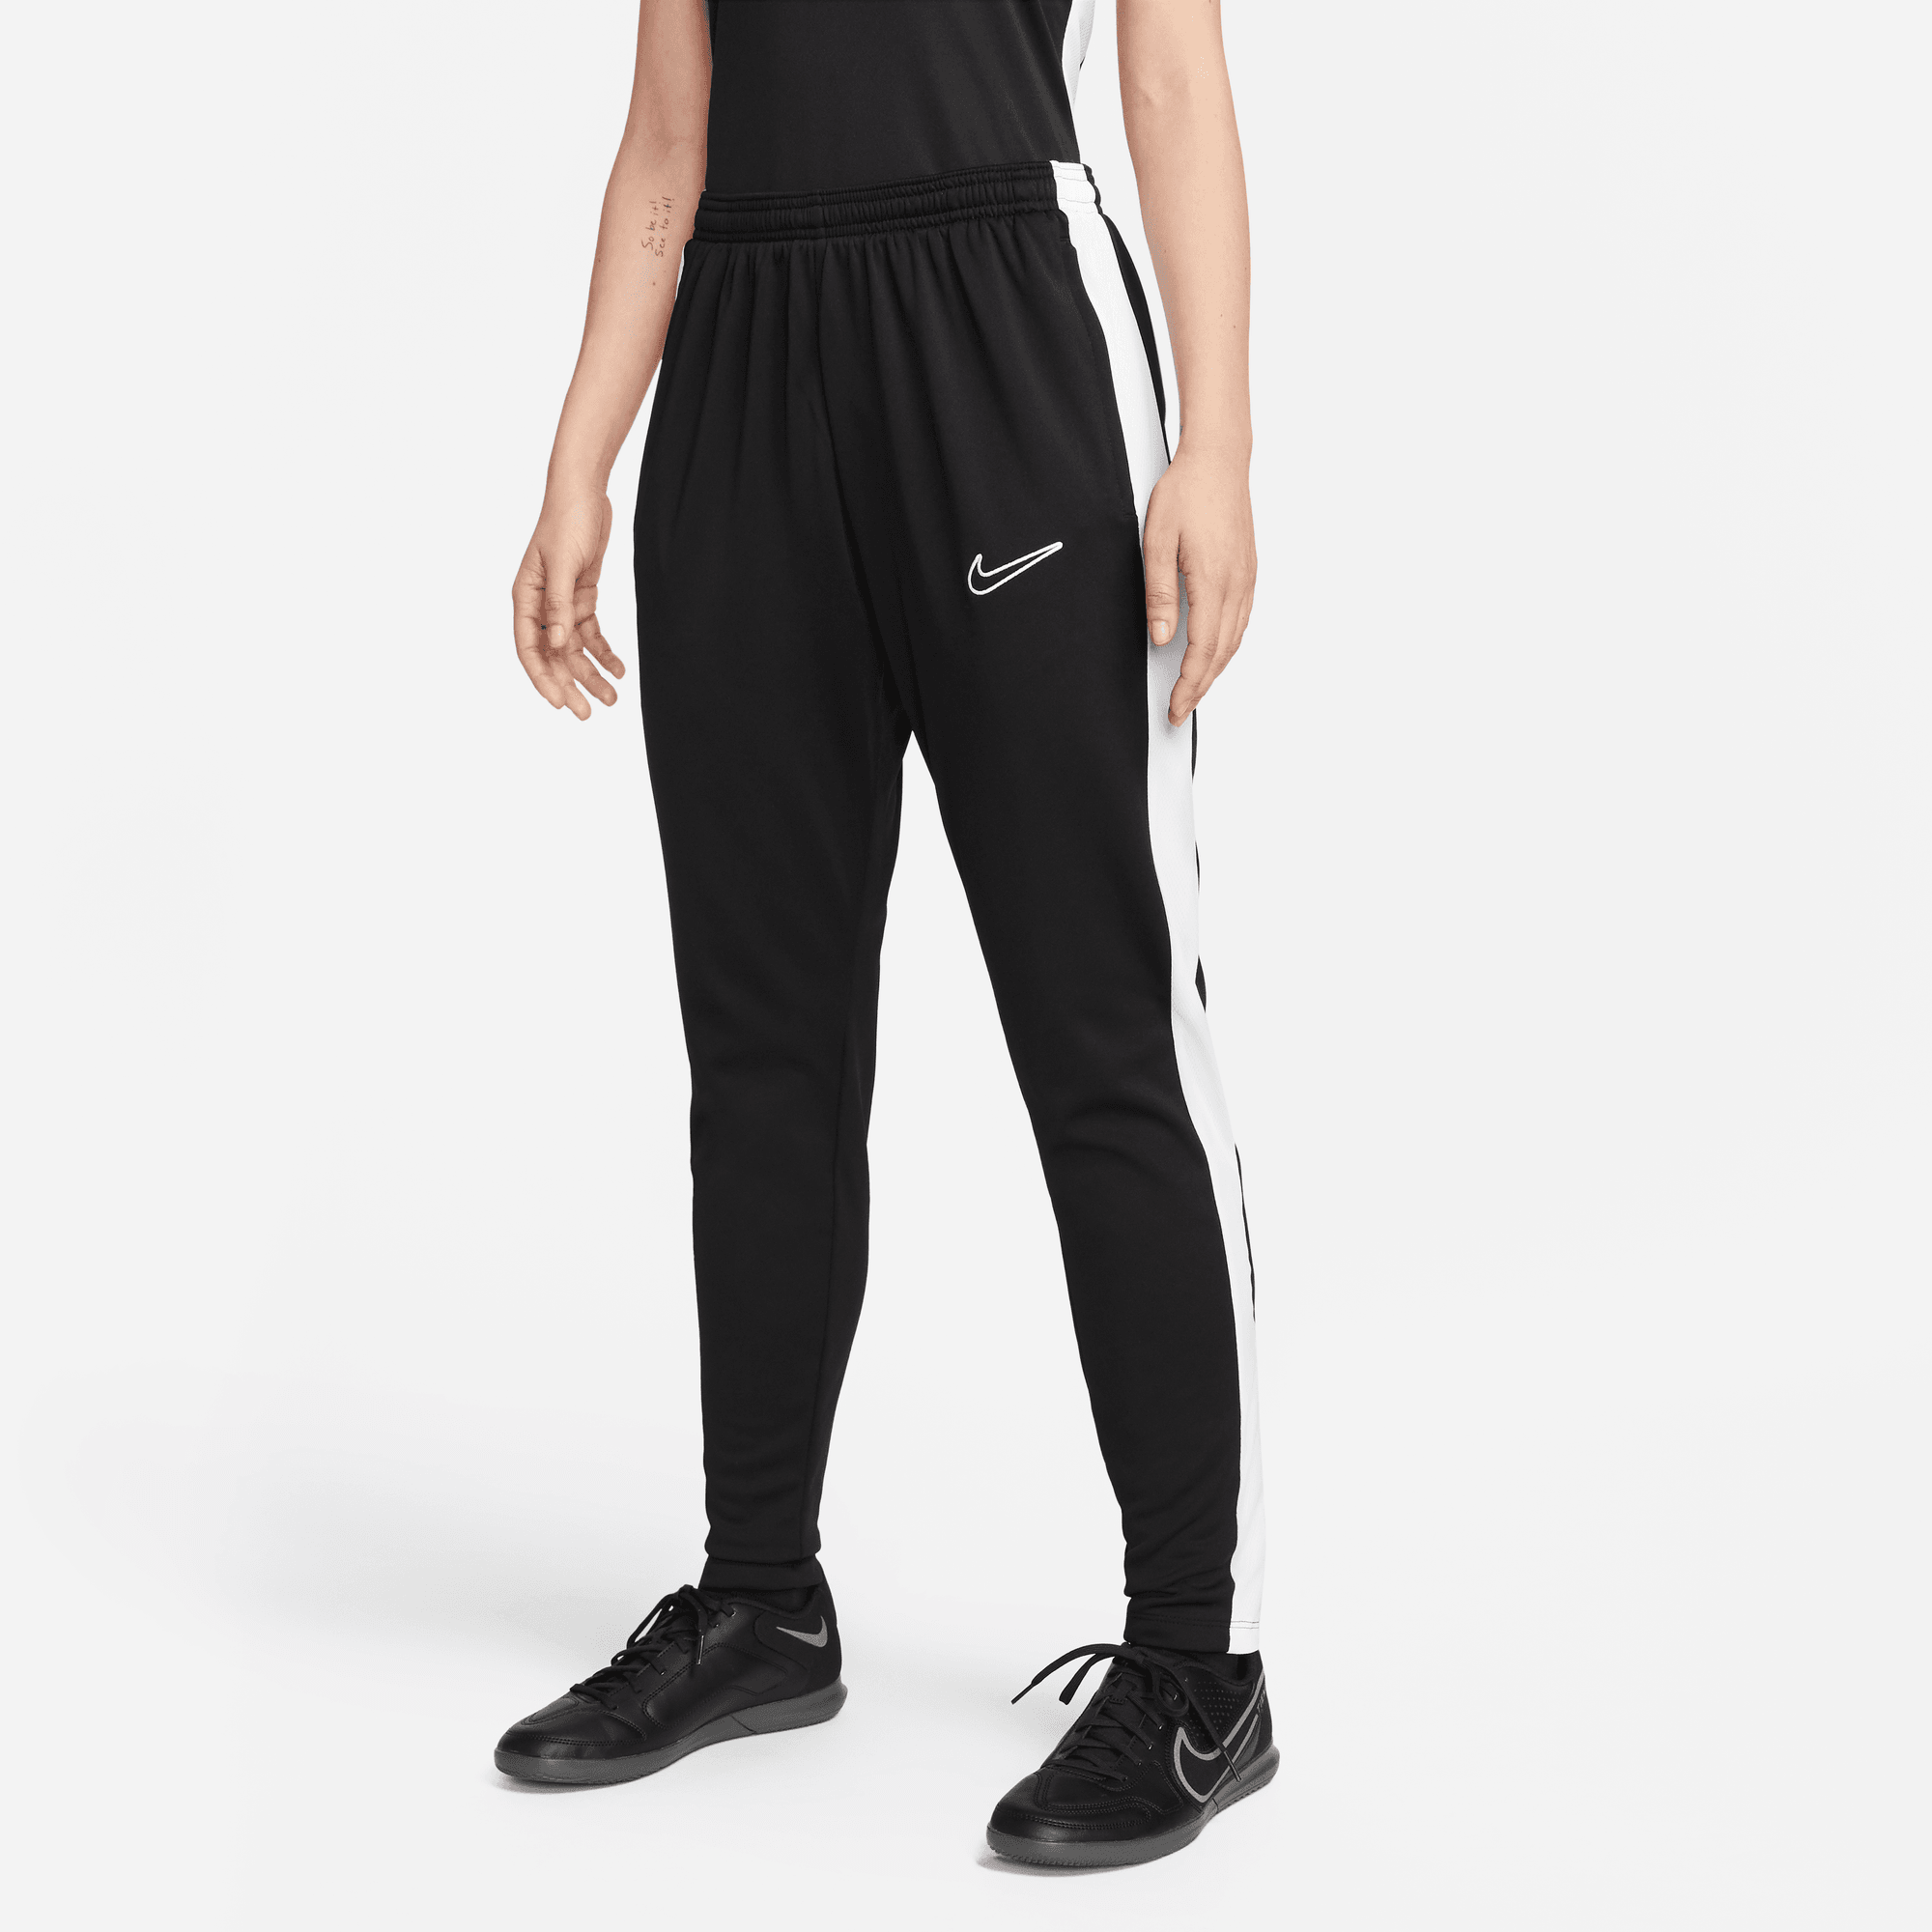 vraag naar Vertrouwelijk Moreel stefanssoccer.com:Nike Women's Academy Pants - Black / White